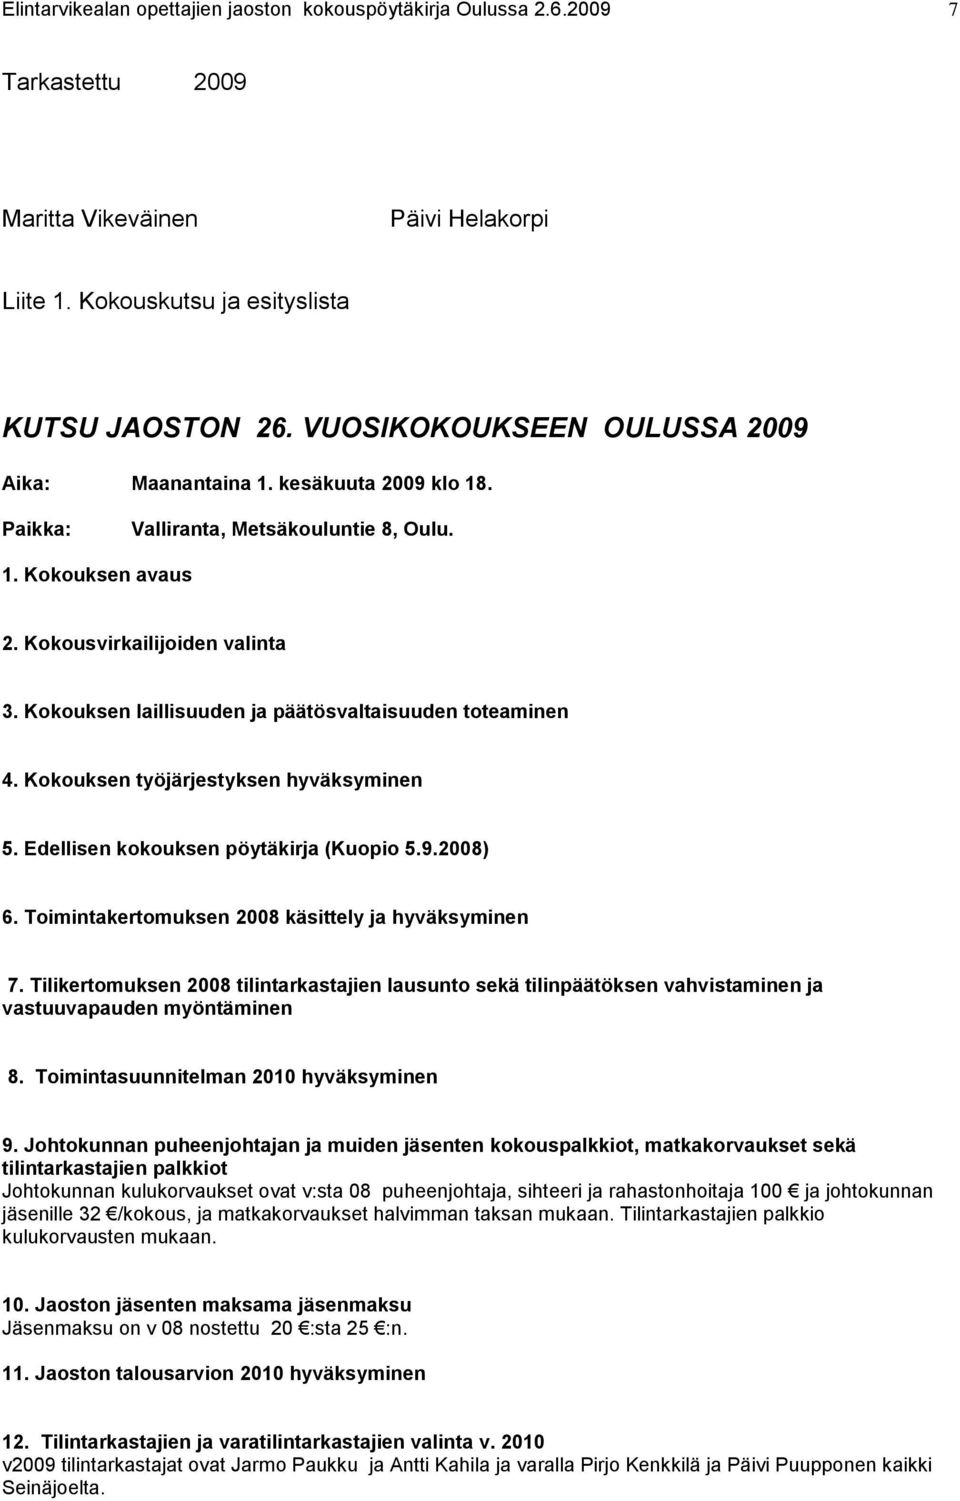 Edellisen kokouksen pöytäkirja (Kuopio 5.9.2008) 6. Toimintakertomuksen 2008 käsittely ja hyväksyminen 7.